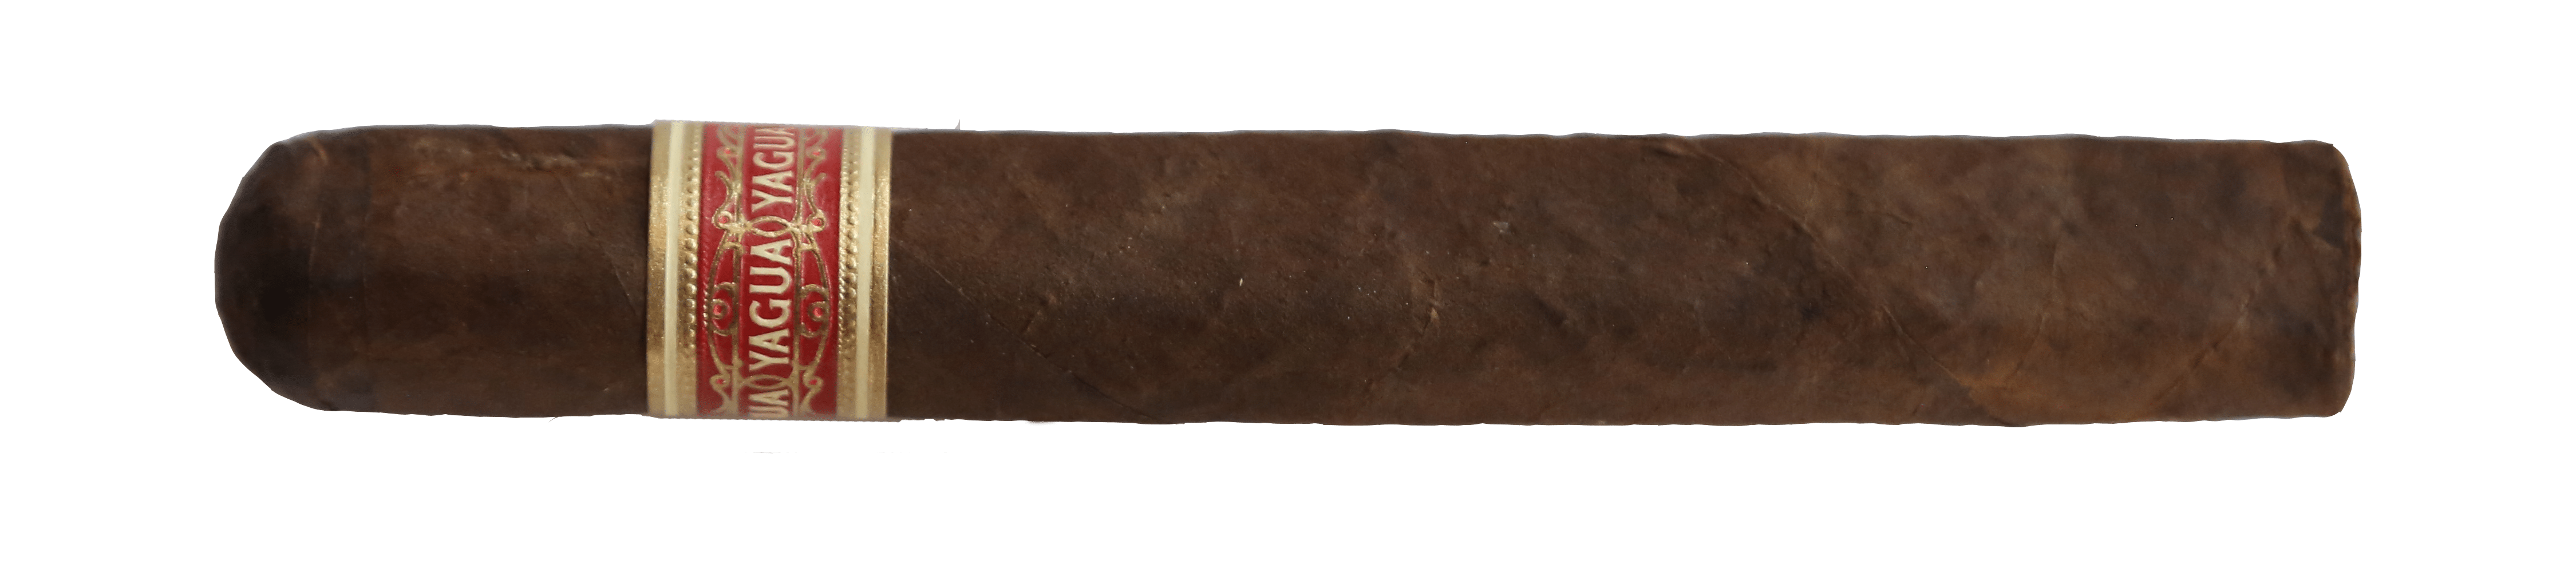 yagua cigar single stick